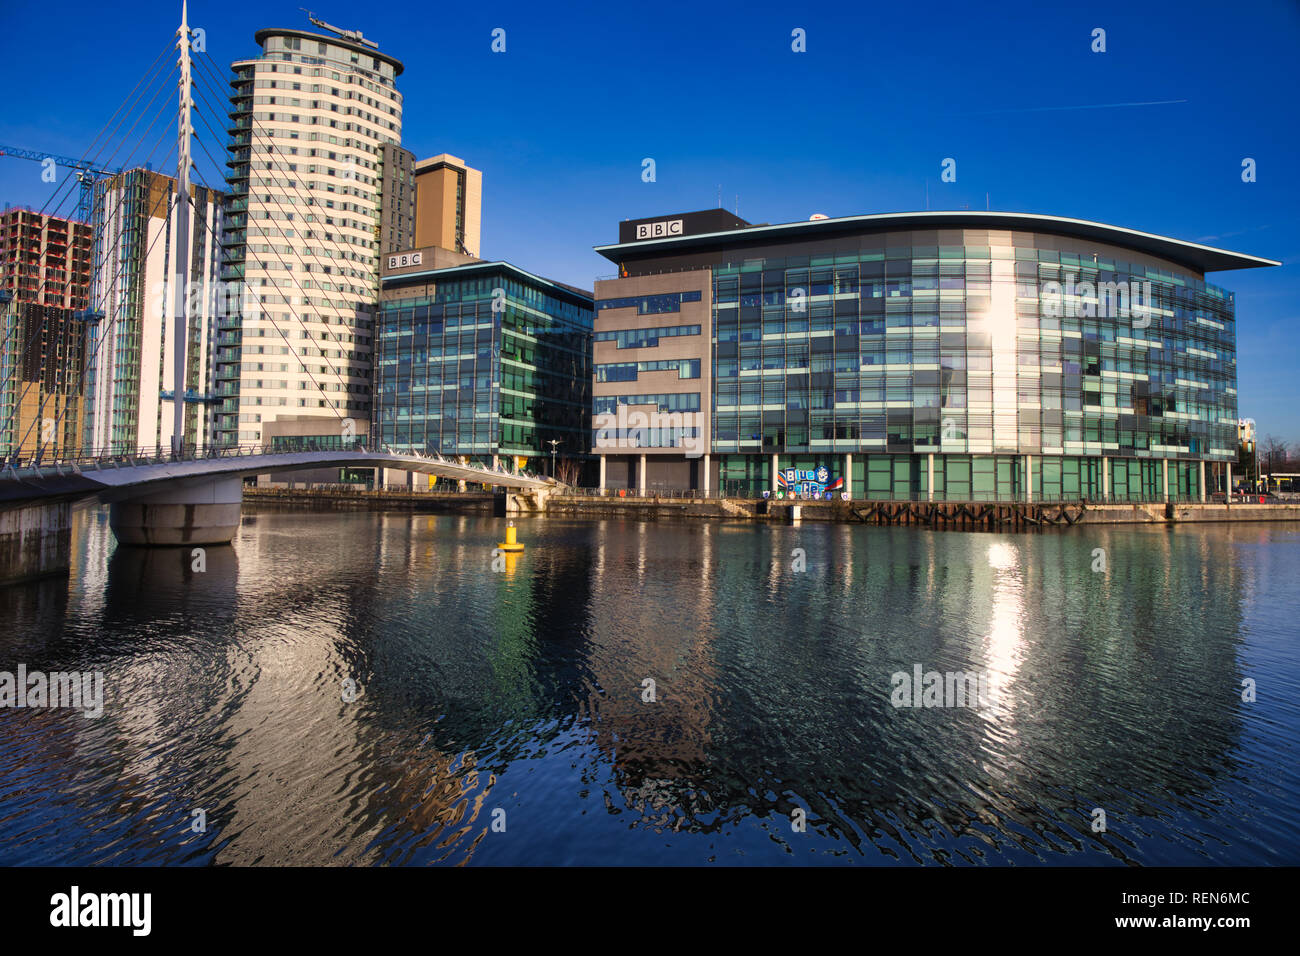 MediaCityUK, der BBC und der Media City Fußgängerbrücke überqueren der Manchester Ship Canal, Salford Quays, Manchester, Vereinigtes Königreich Stockfoto